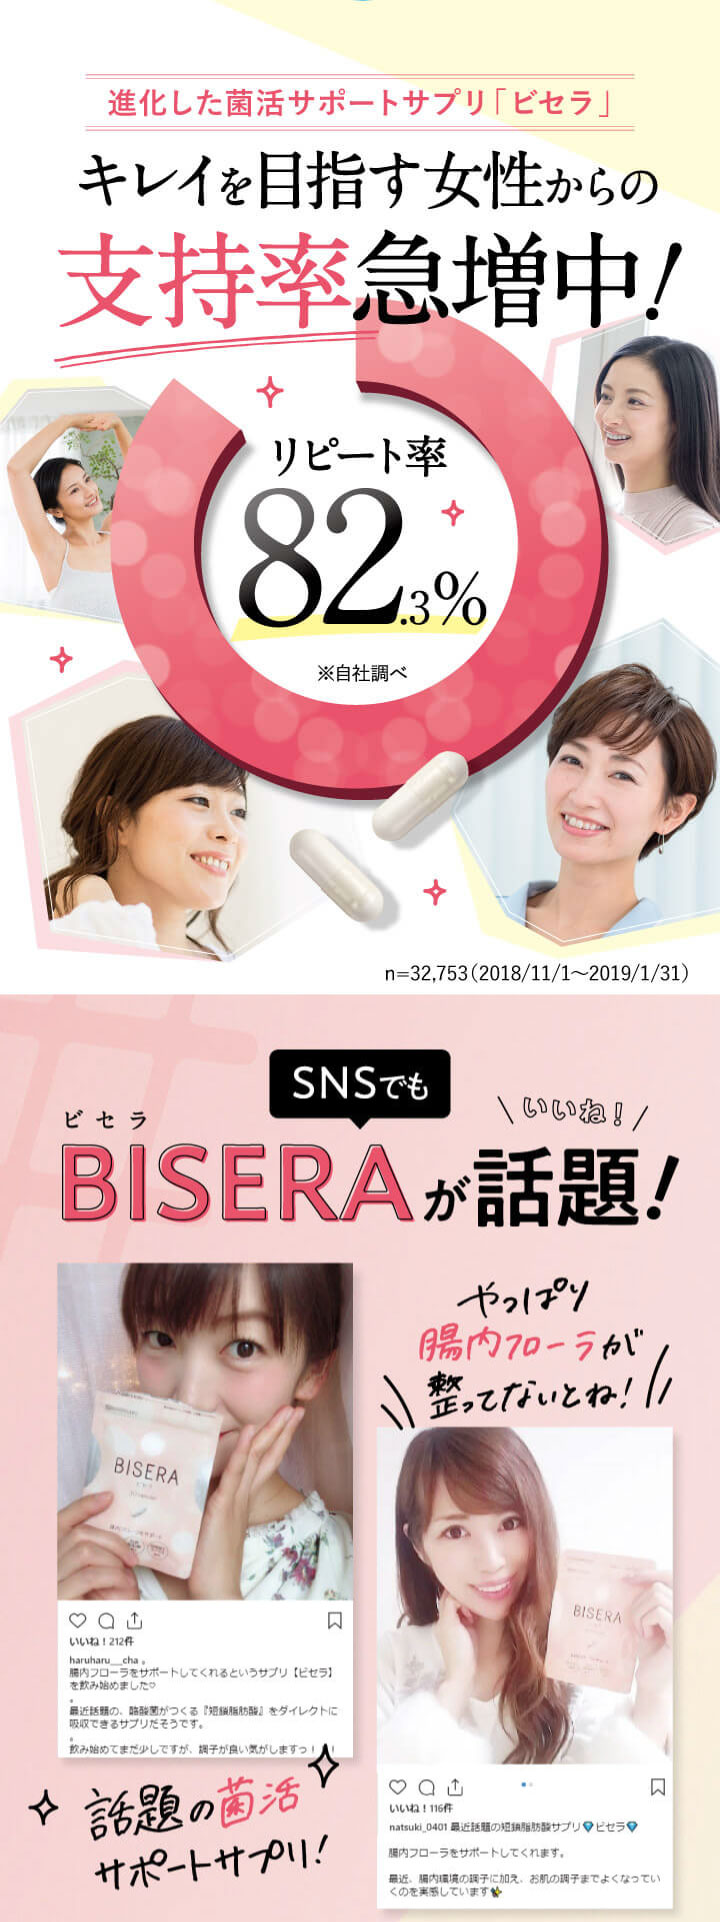 BISERA ビセラ×6 サプリ